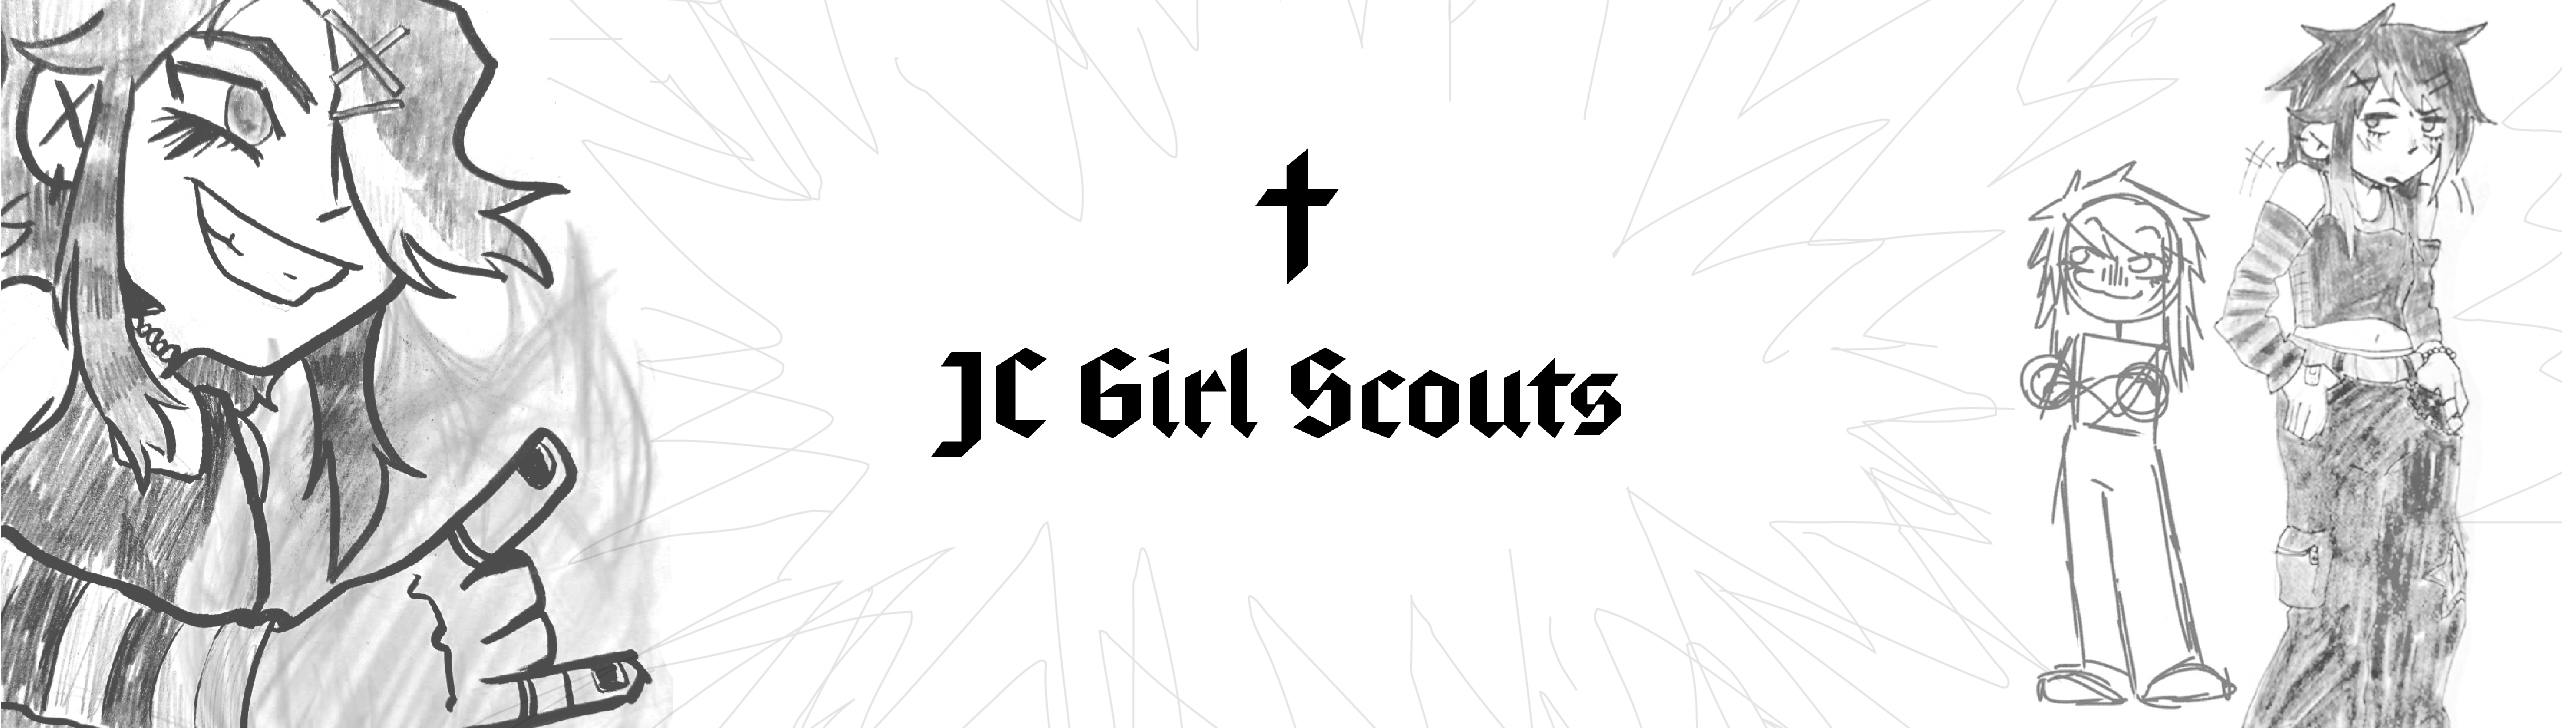 JC Girl Scouts